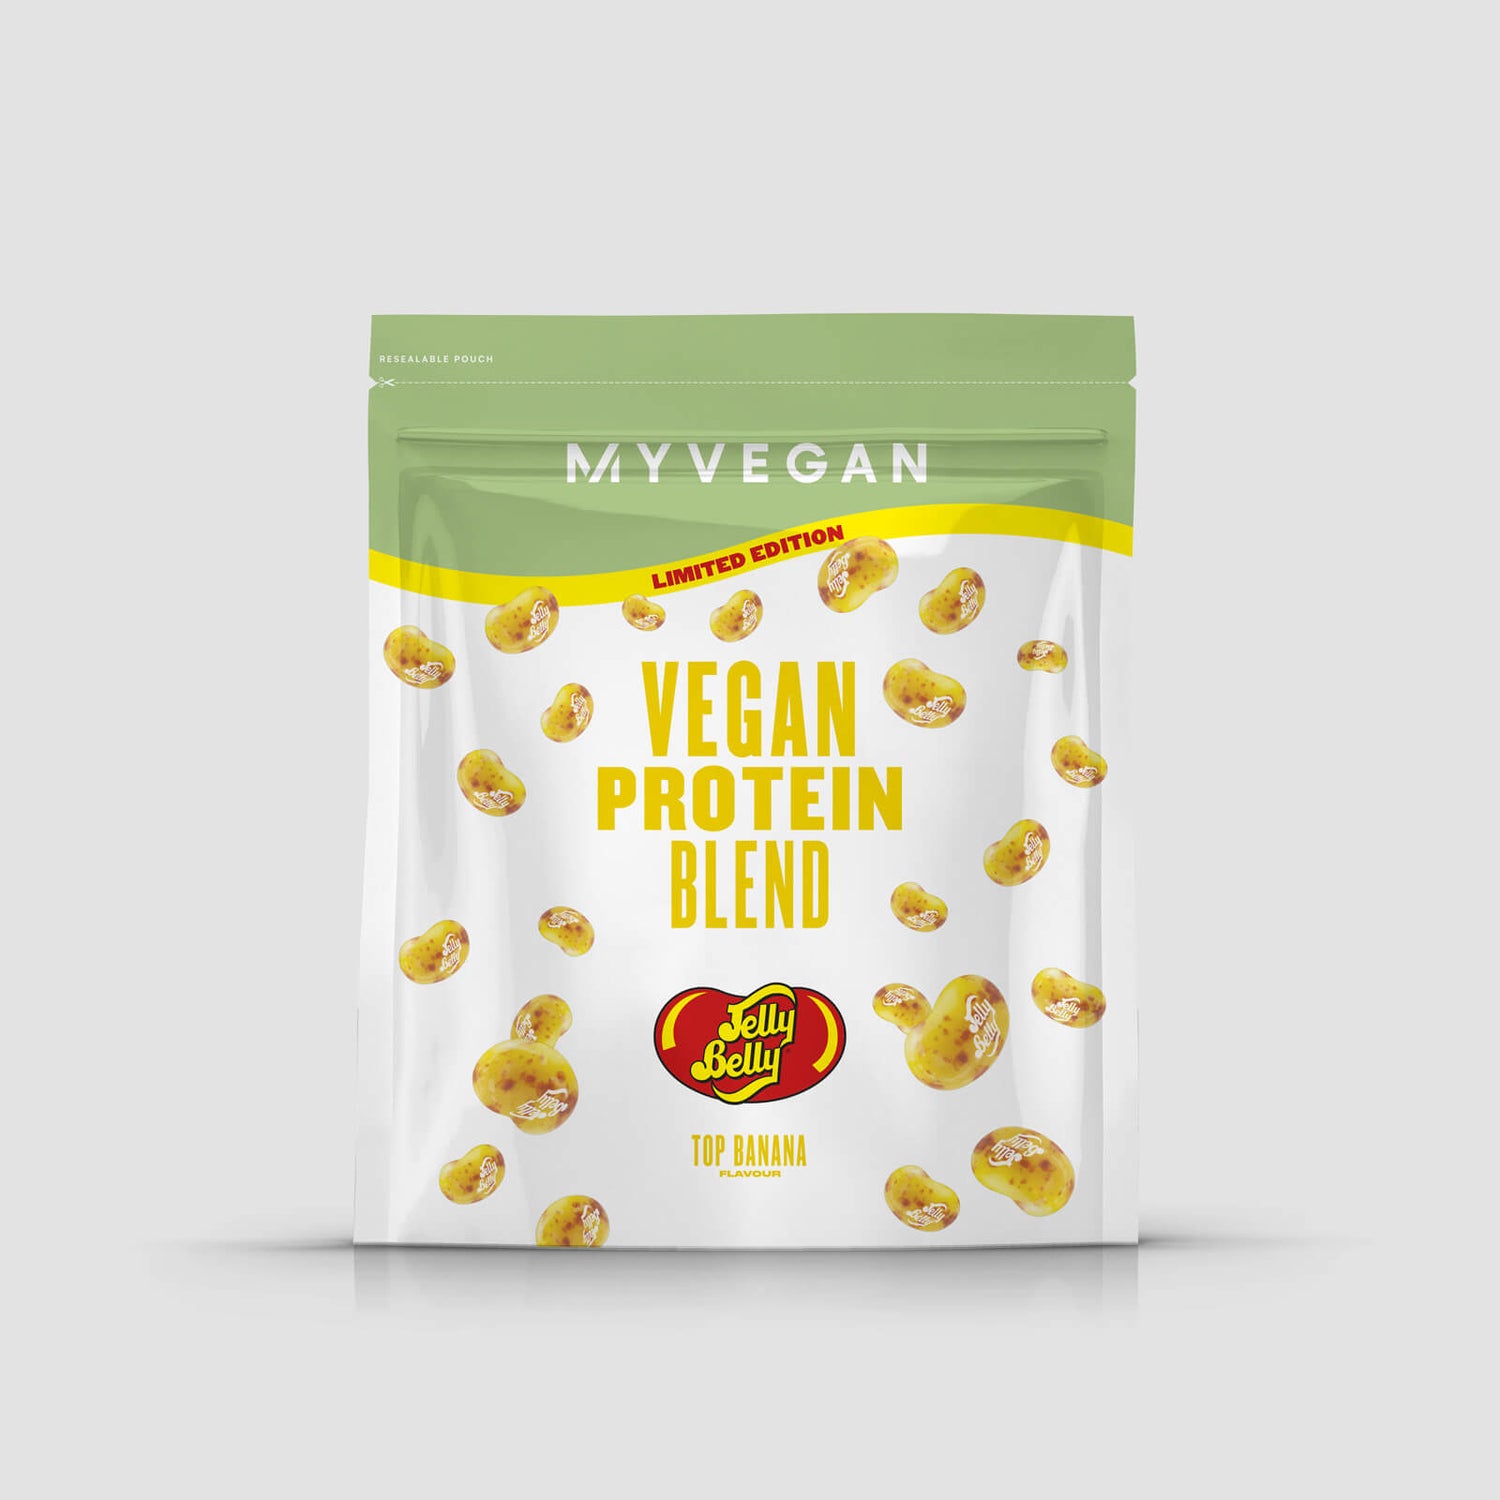 Veganiškas baltymų mišinys (mėginys) - 1servings - Top Banana